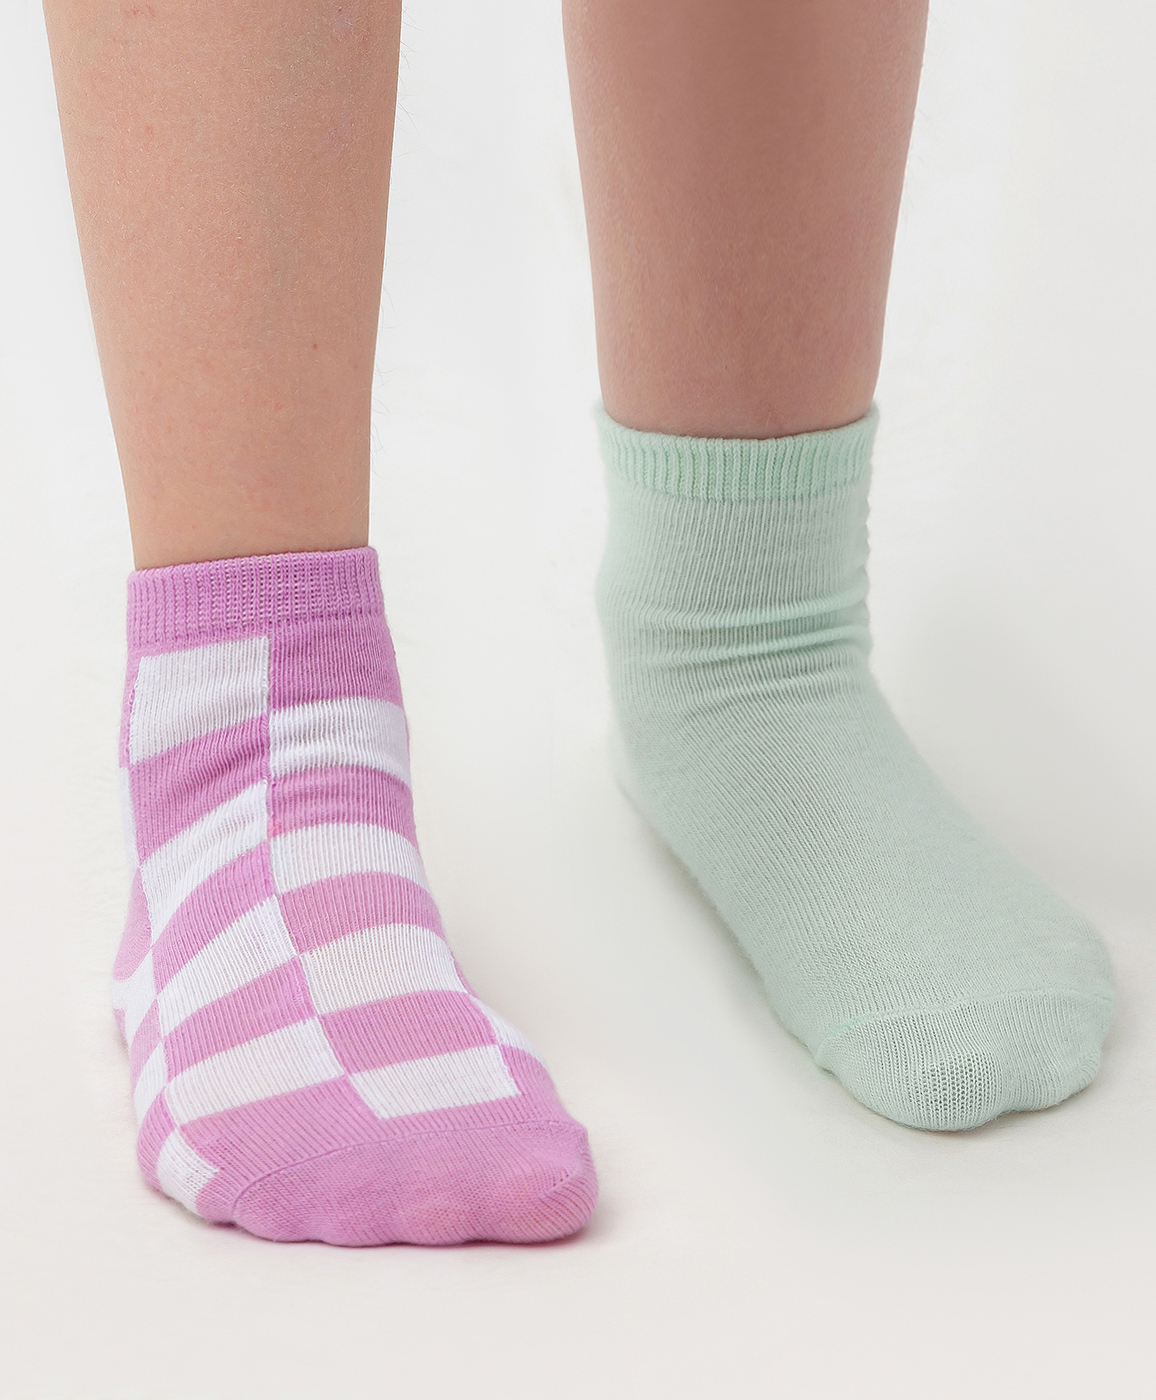 Комплект носков средней длины  мятного и светло-фиолетового цвета, 2 пары Button Blue